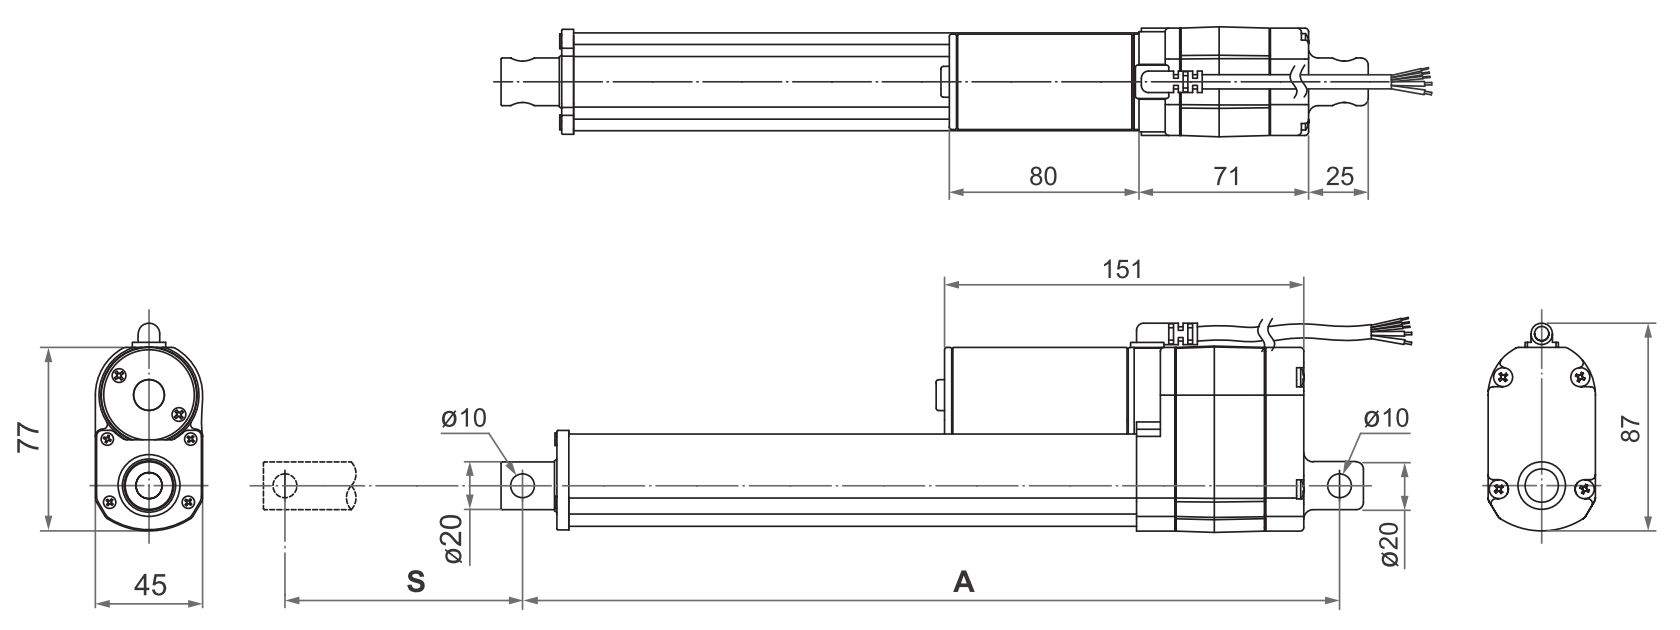 DSZY4 - Maßbild für die Variante Potentiometer